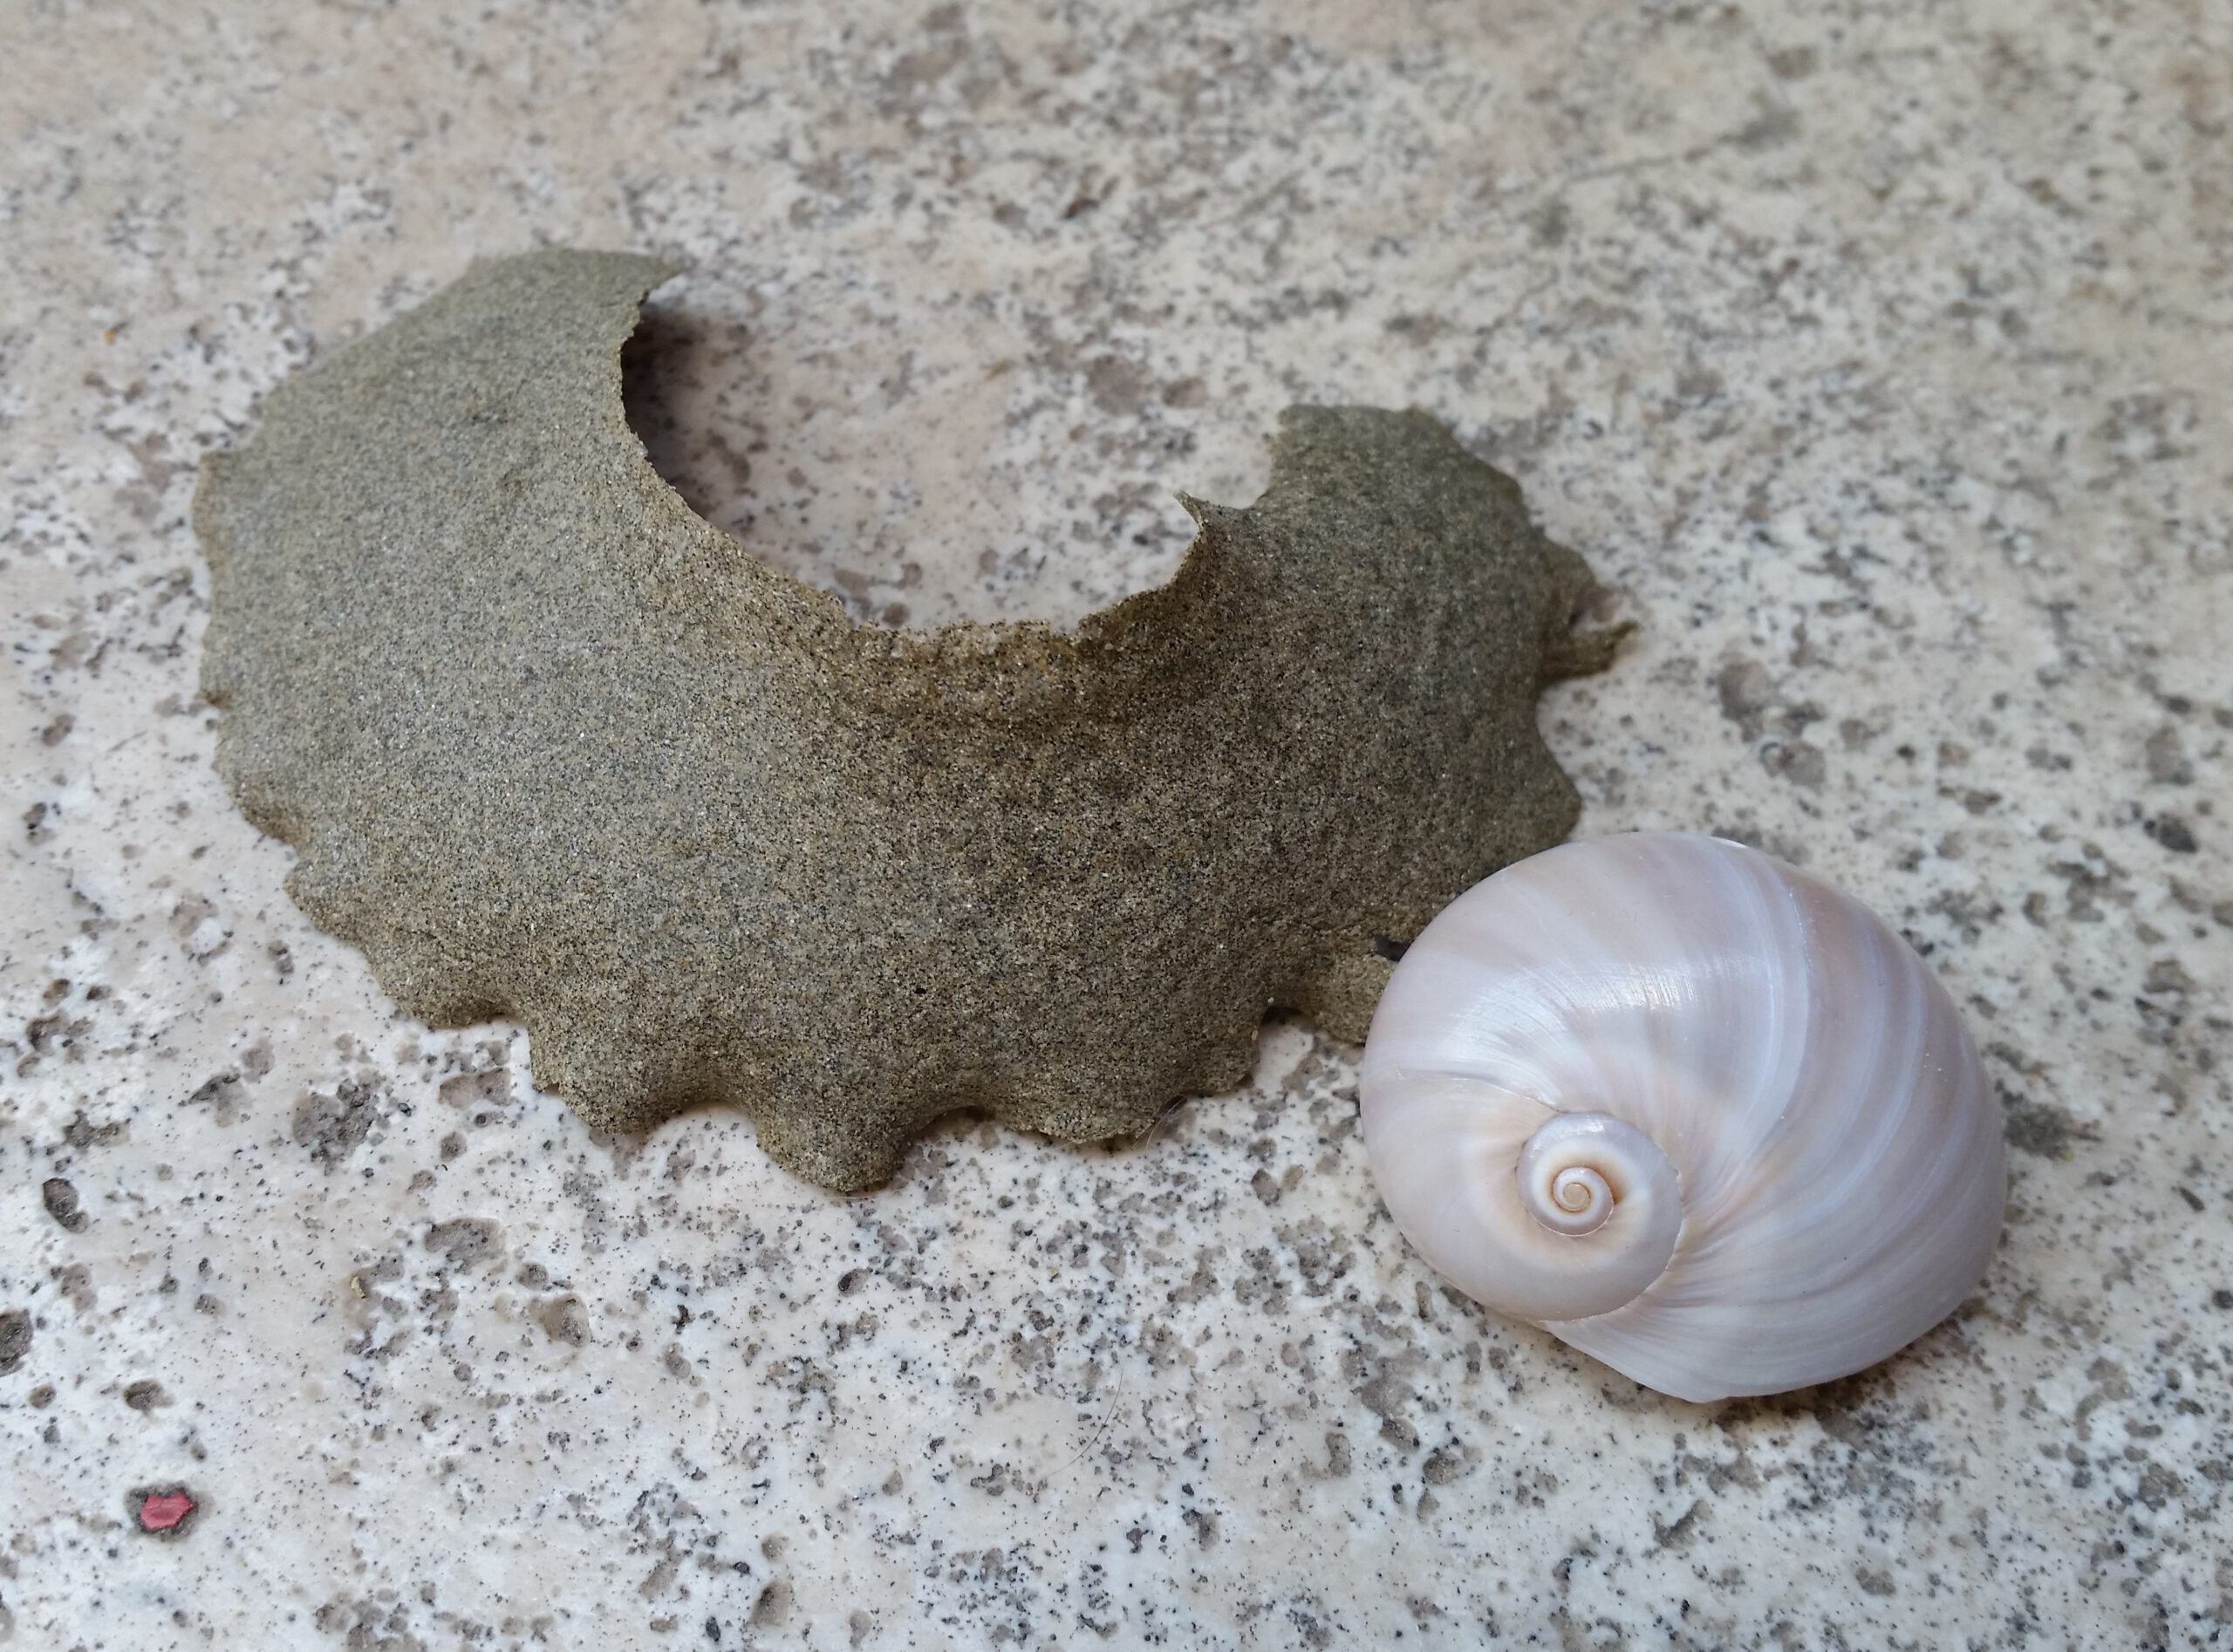 Per ammirare il ricamo della Vita basta una passeggiata in spiaggia: le ovature dei Gasteropodi Naticidi